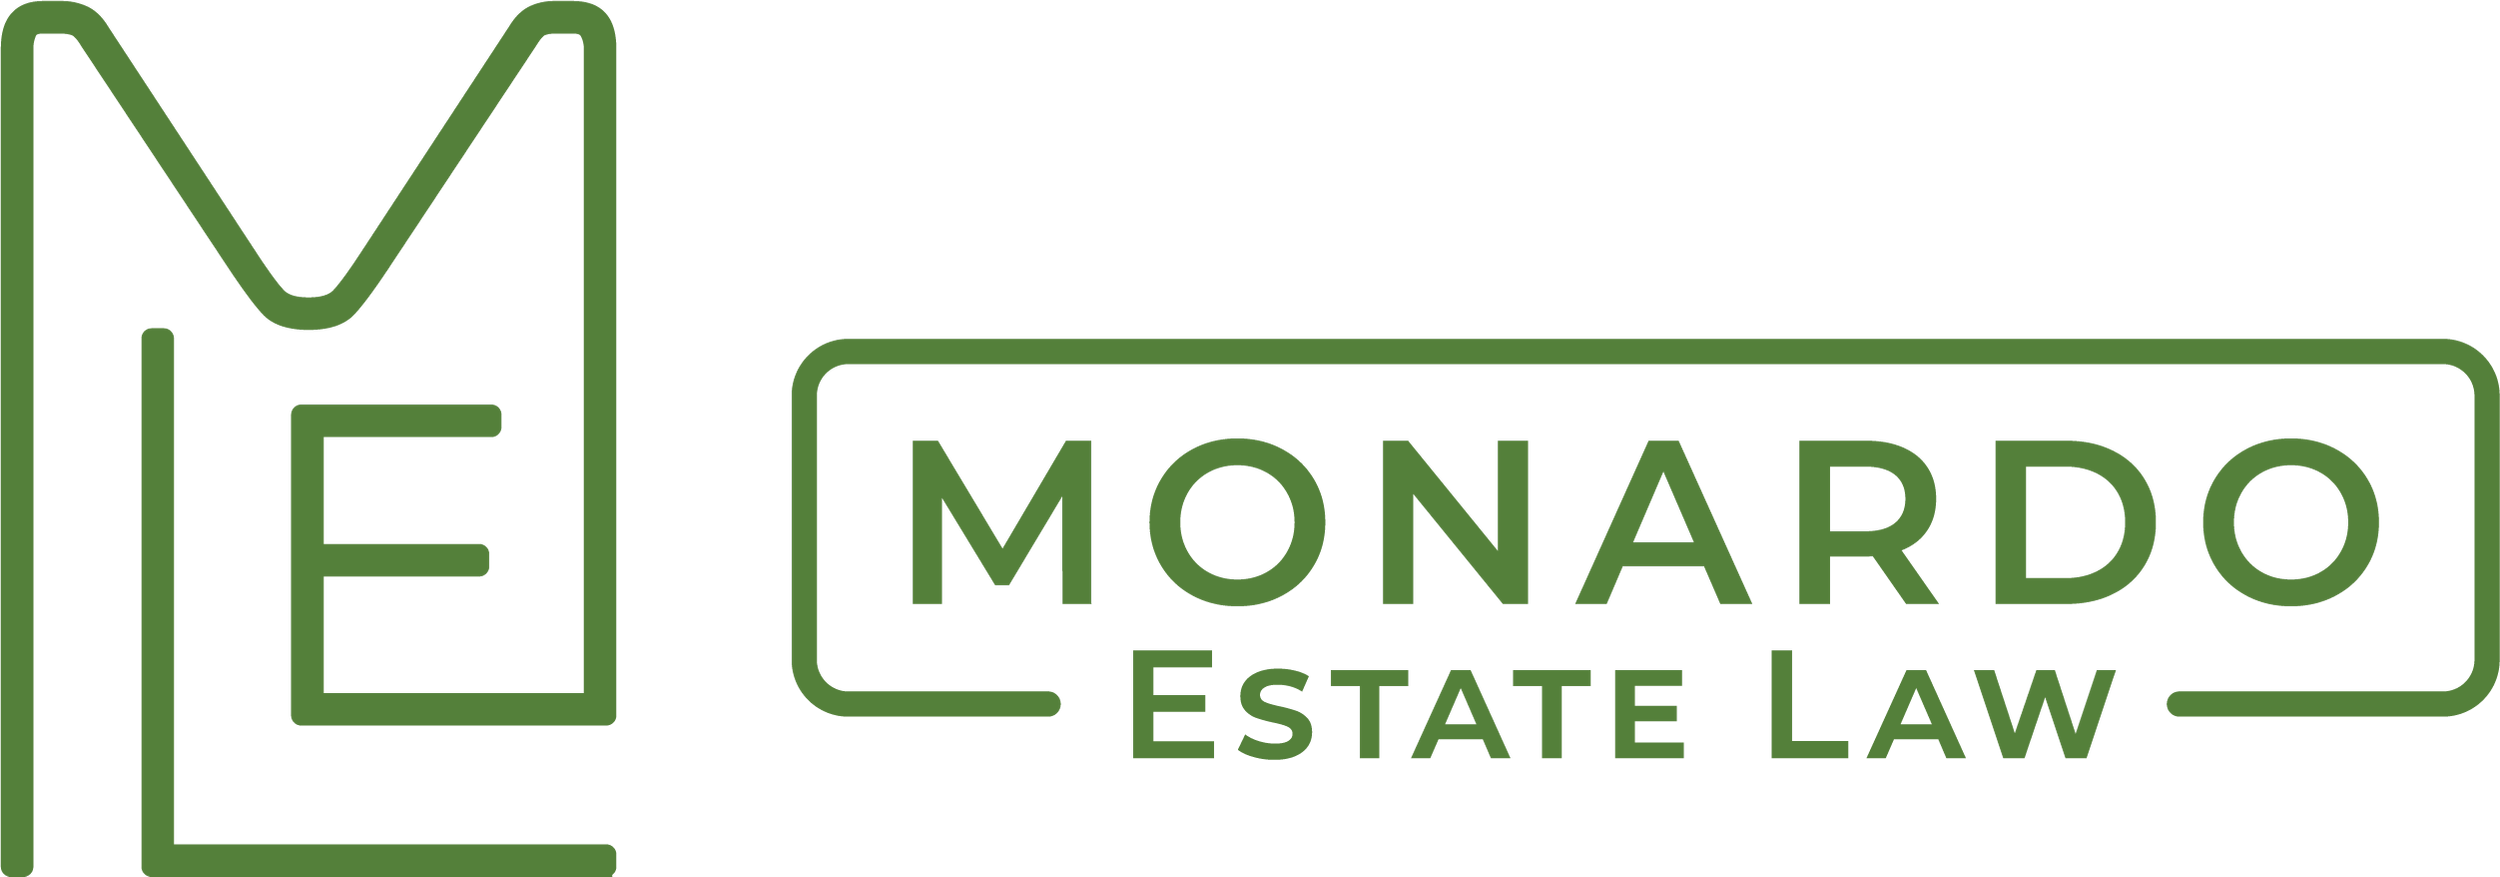 Monardo Estate Law